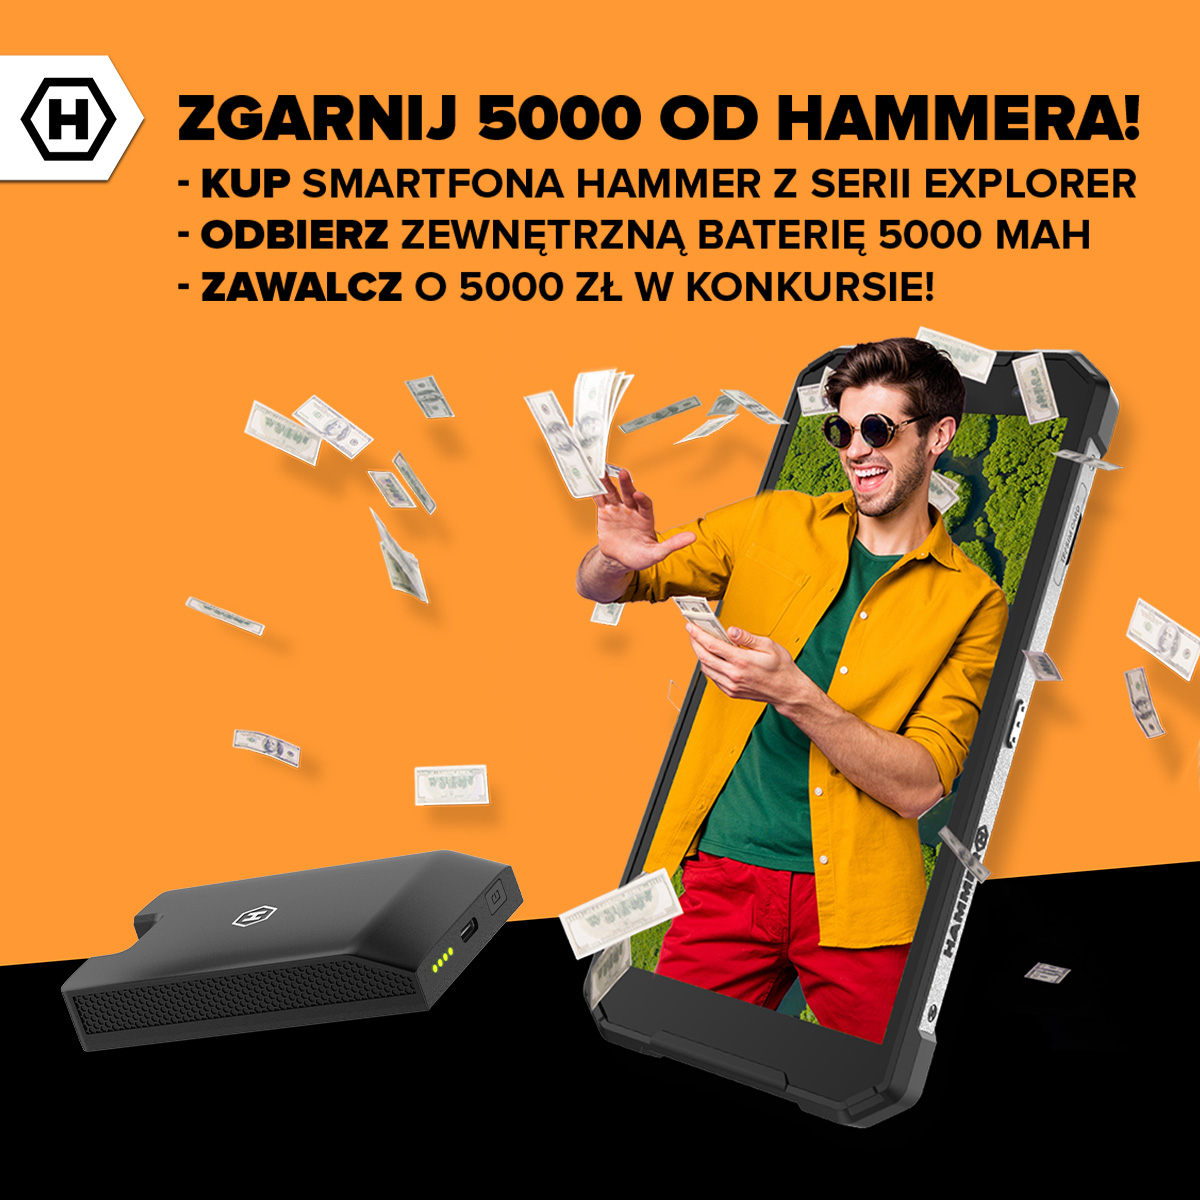 Promocja HAMMER – powerbanki w prezencie i 5000 zł do wygrania